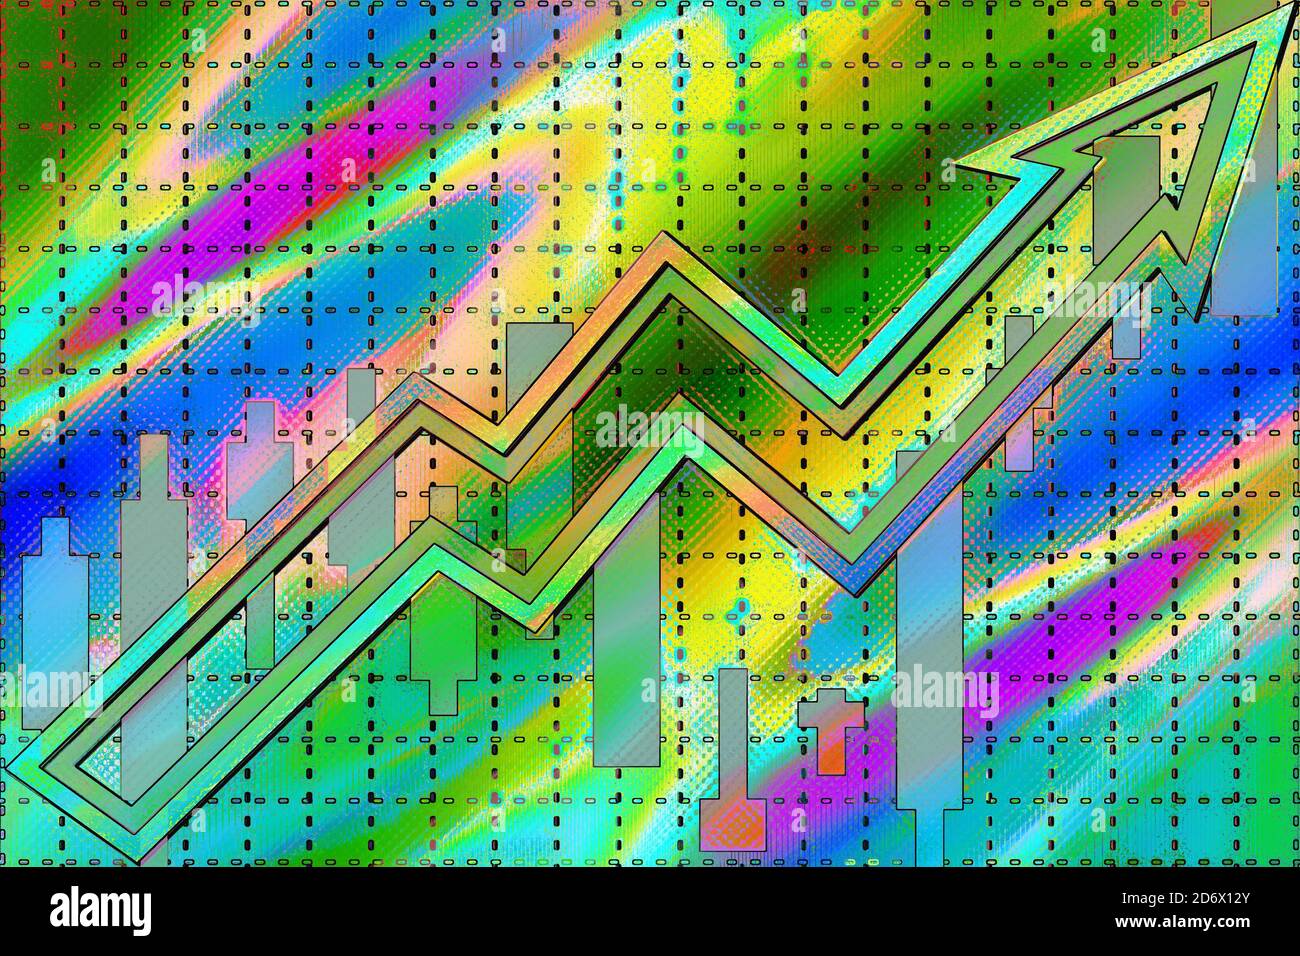 Une flèche tendance néon multicolore abstraite et une image d'arrière-plan de graphique en forme de chandelier. Banque D'Images